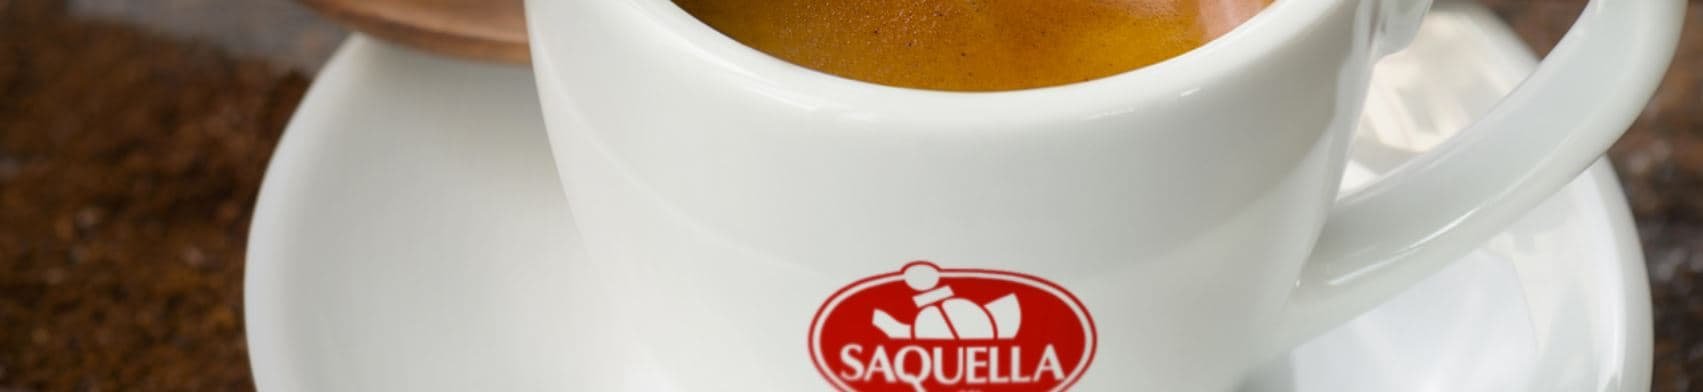 Saquellatasse-saquella-cafe-espresso